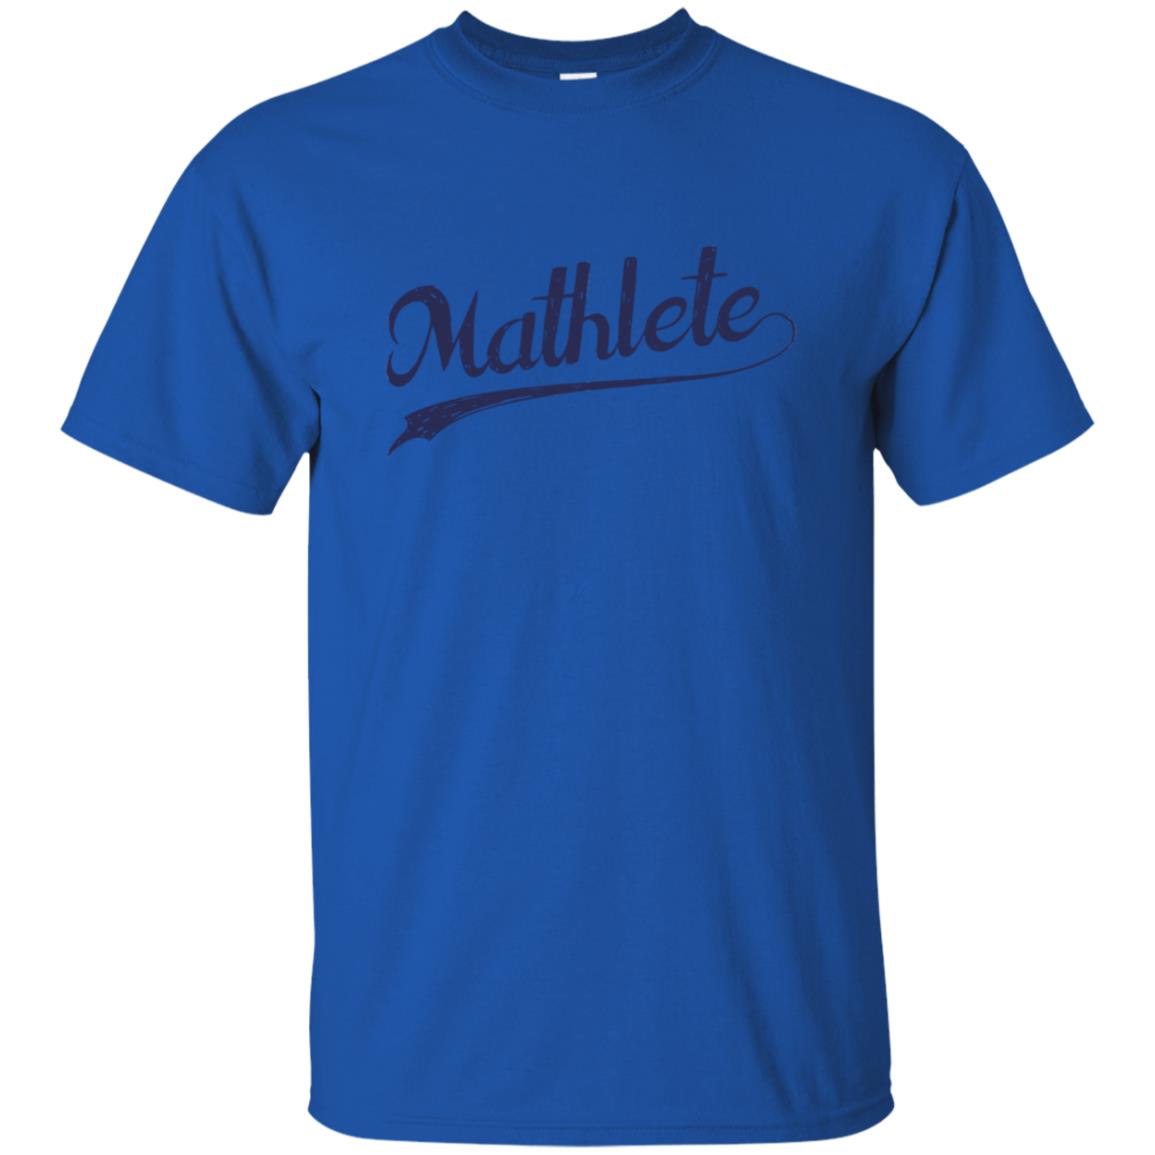 Mathlete T Shirt - 10% Off - FavorMerch